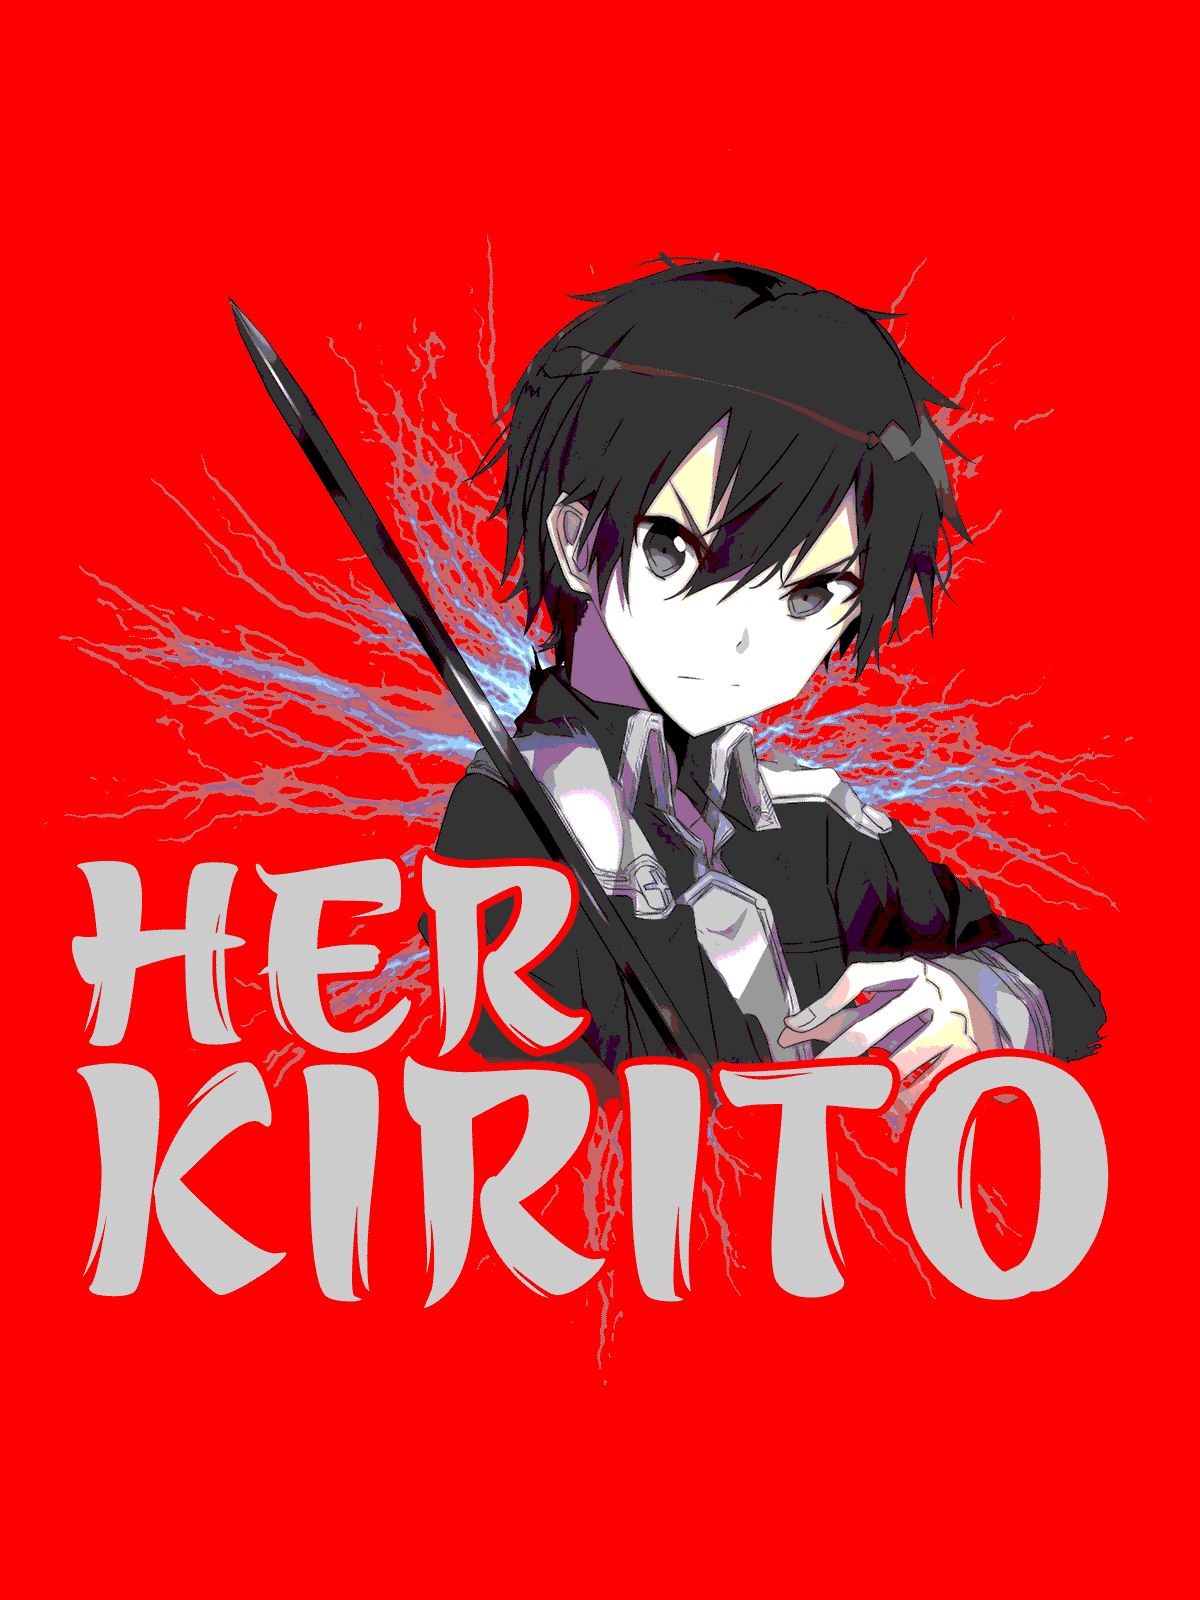 Her Kirito